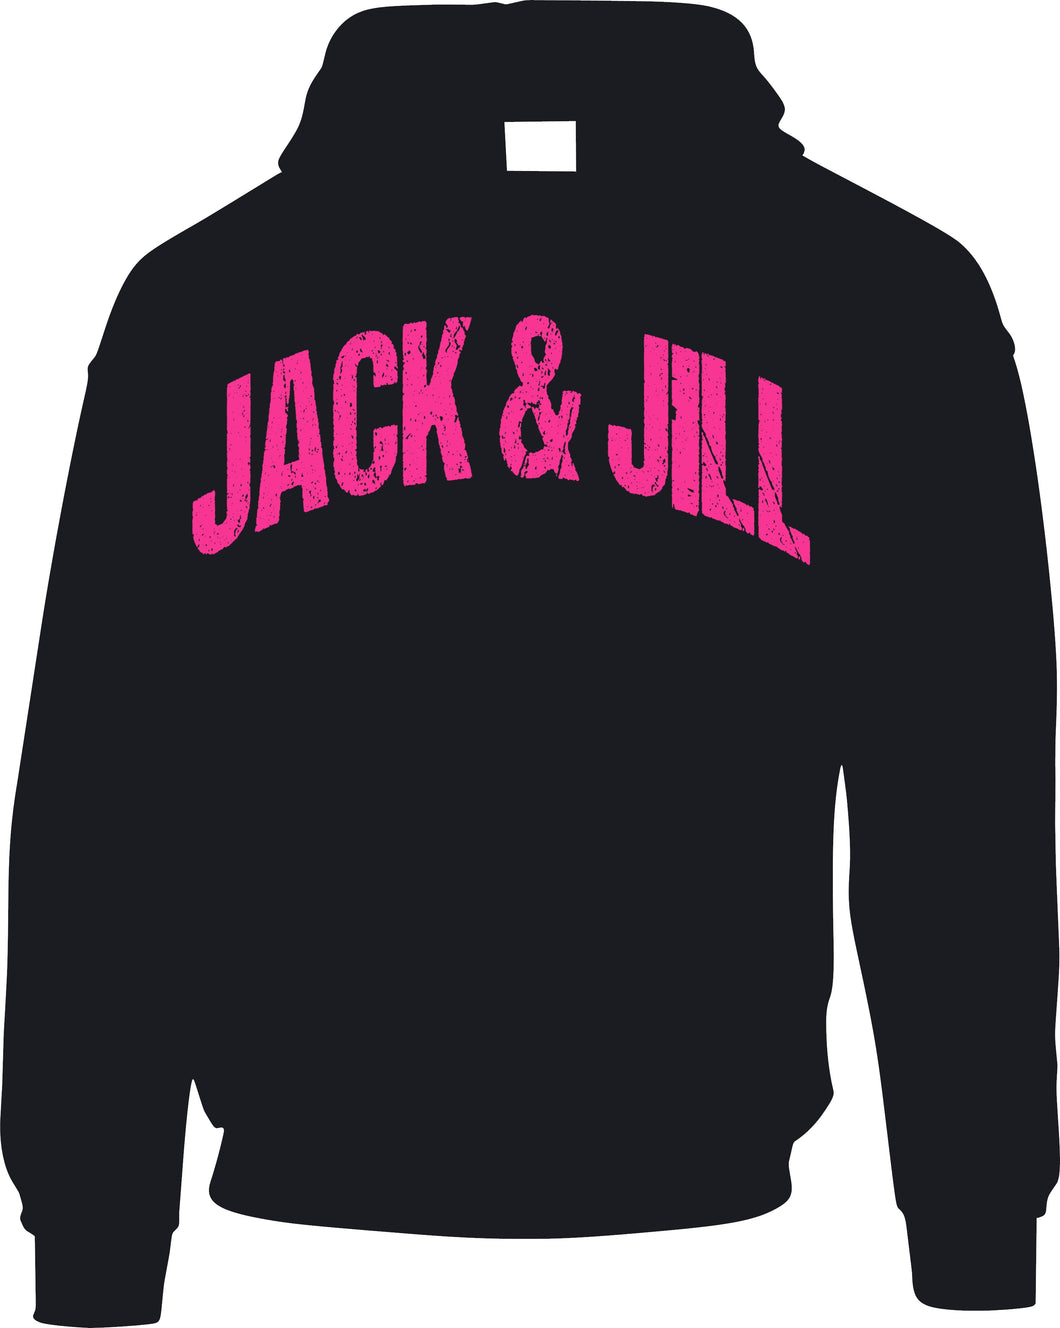 JACK & JILL Hoodie - Pink